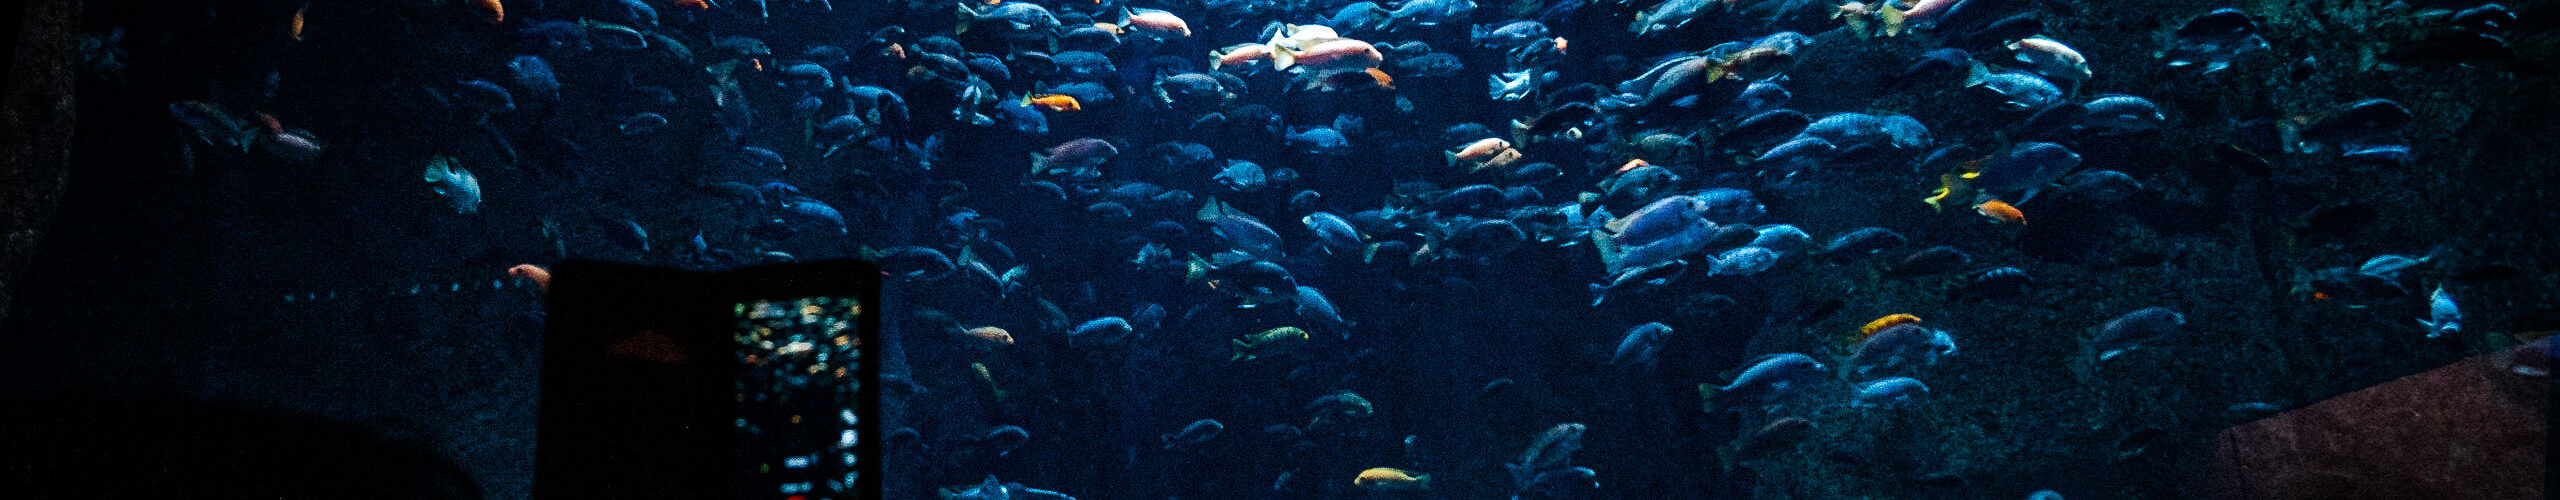 Ławica rybek w akwarium